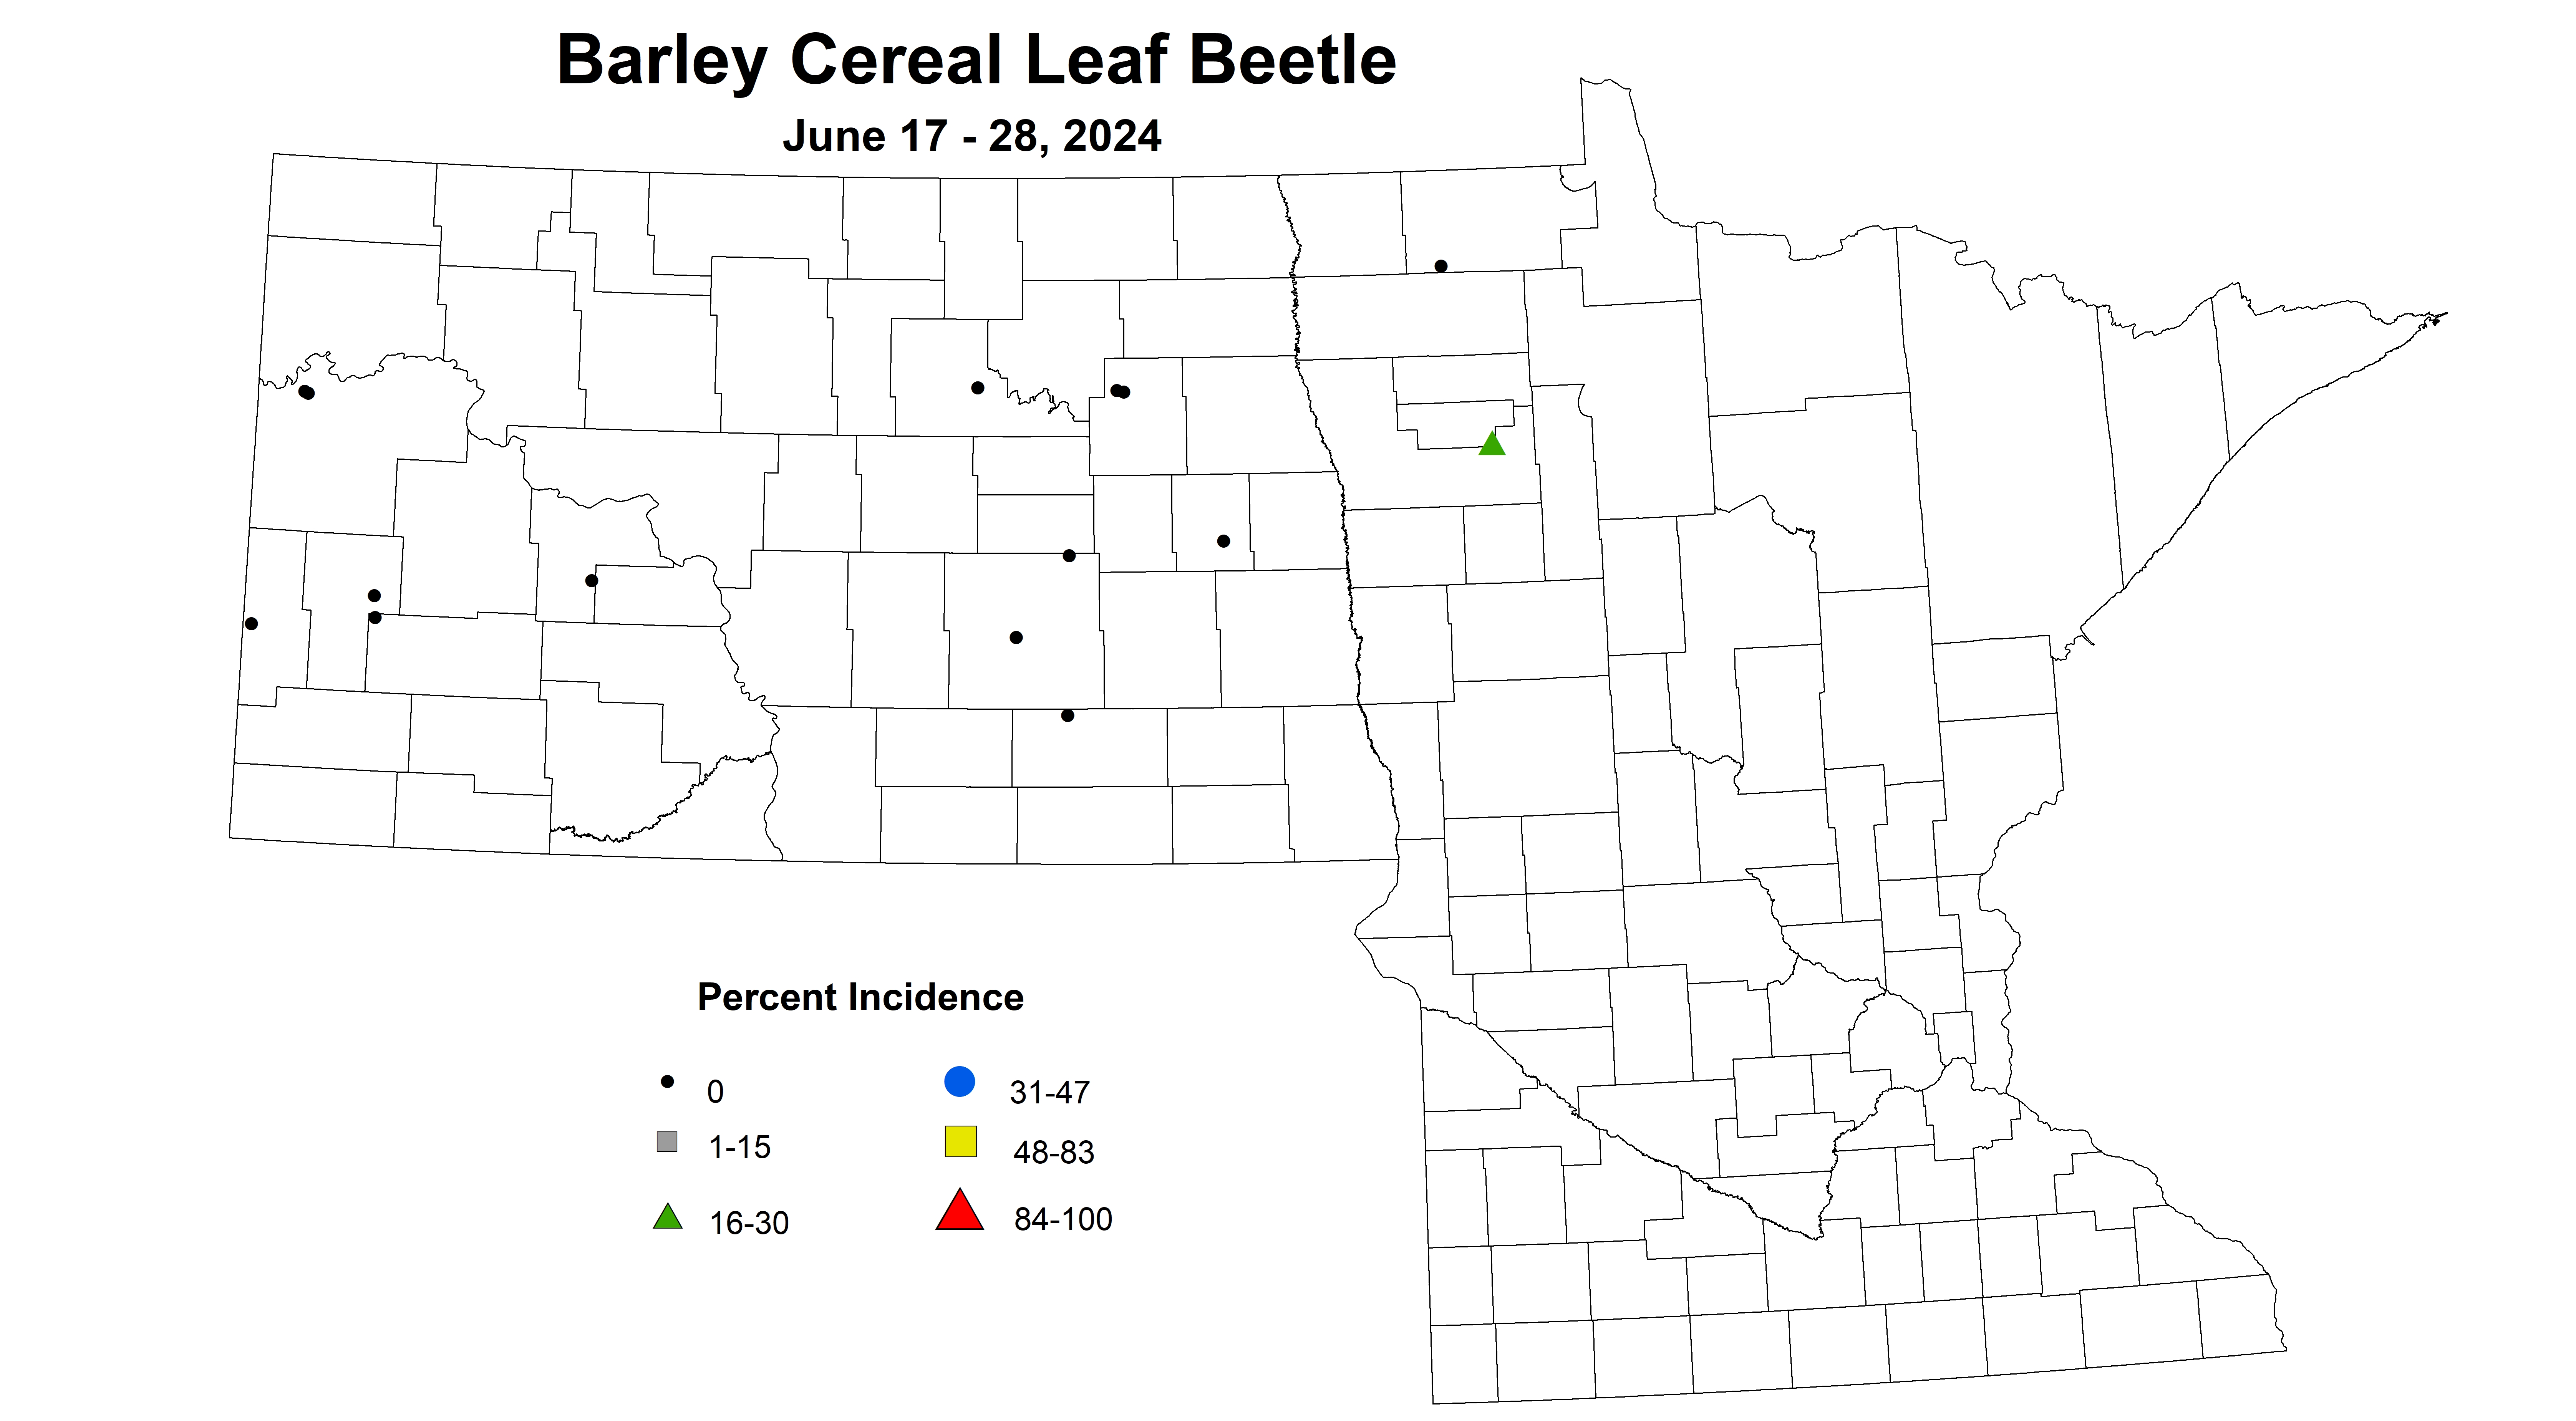 barley cereal leaf beetle June 17-28 2024